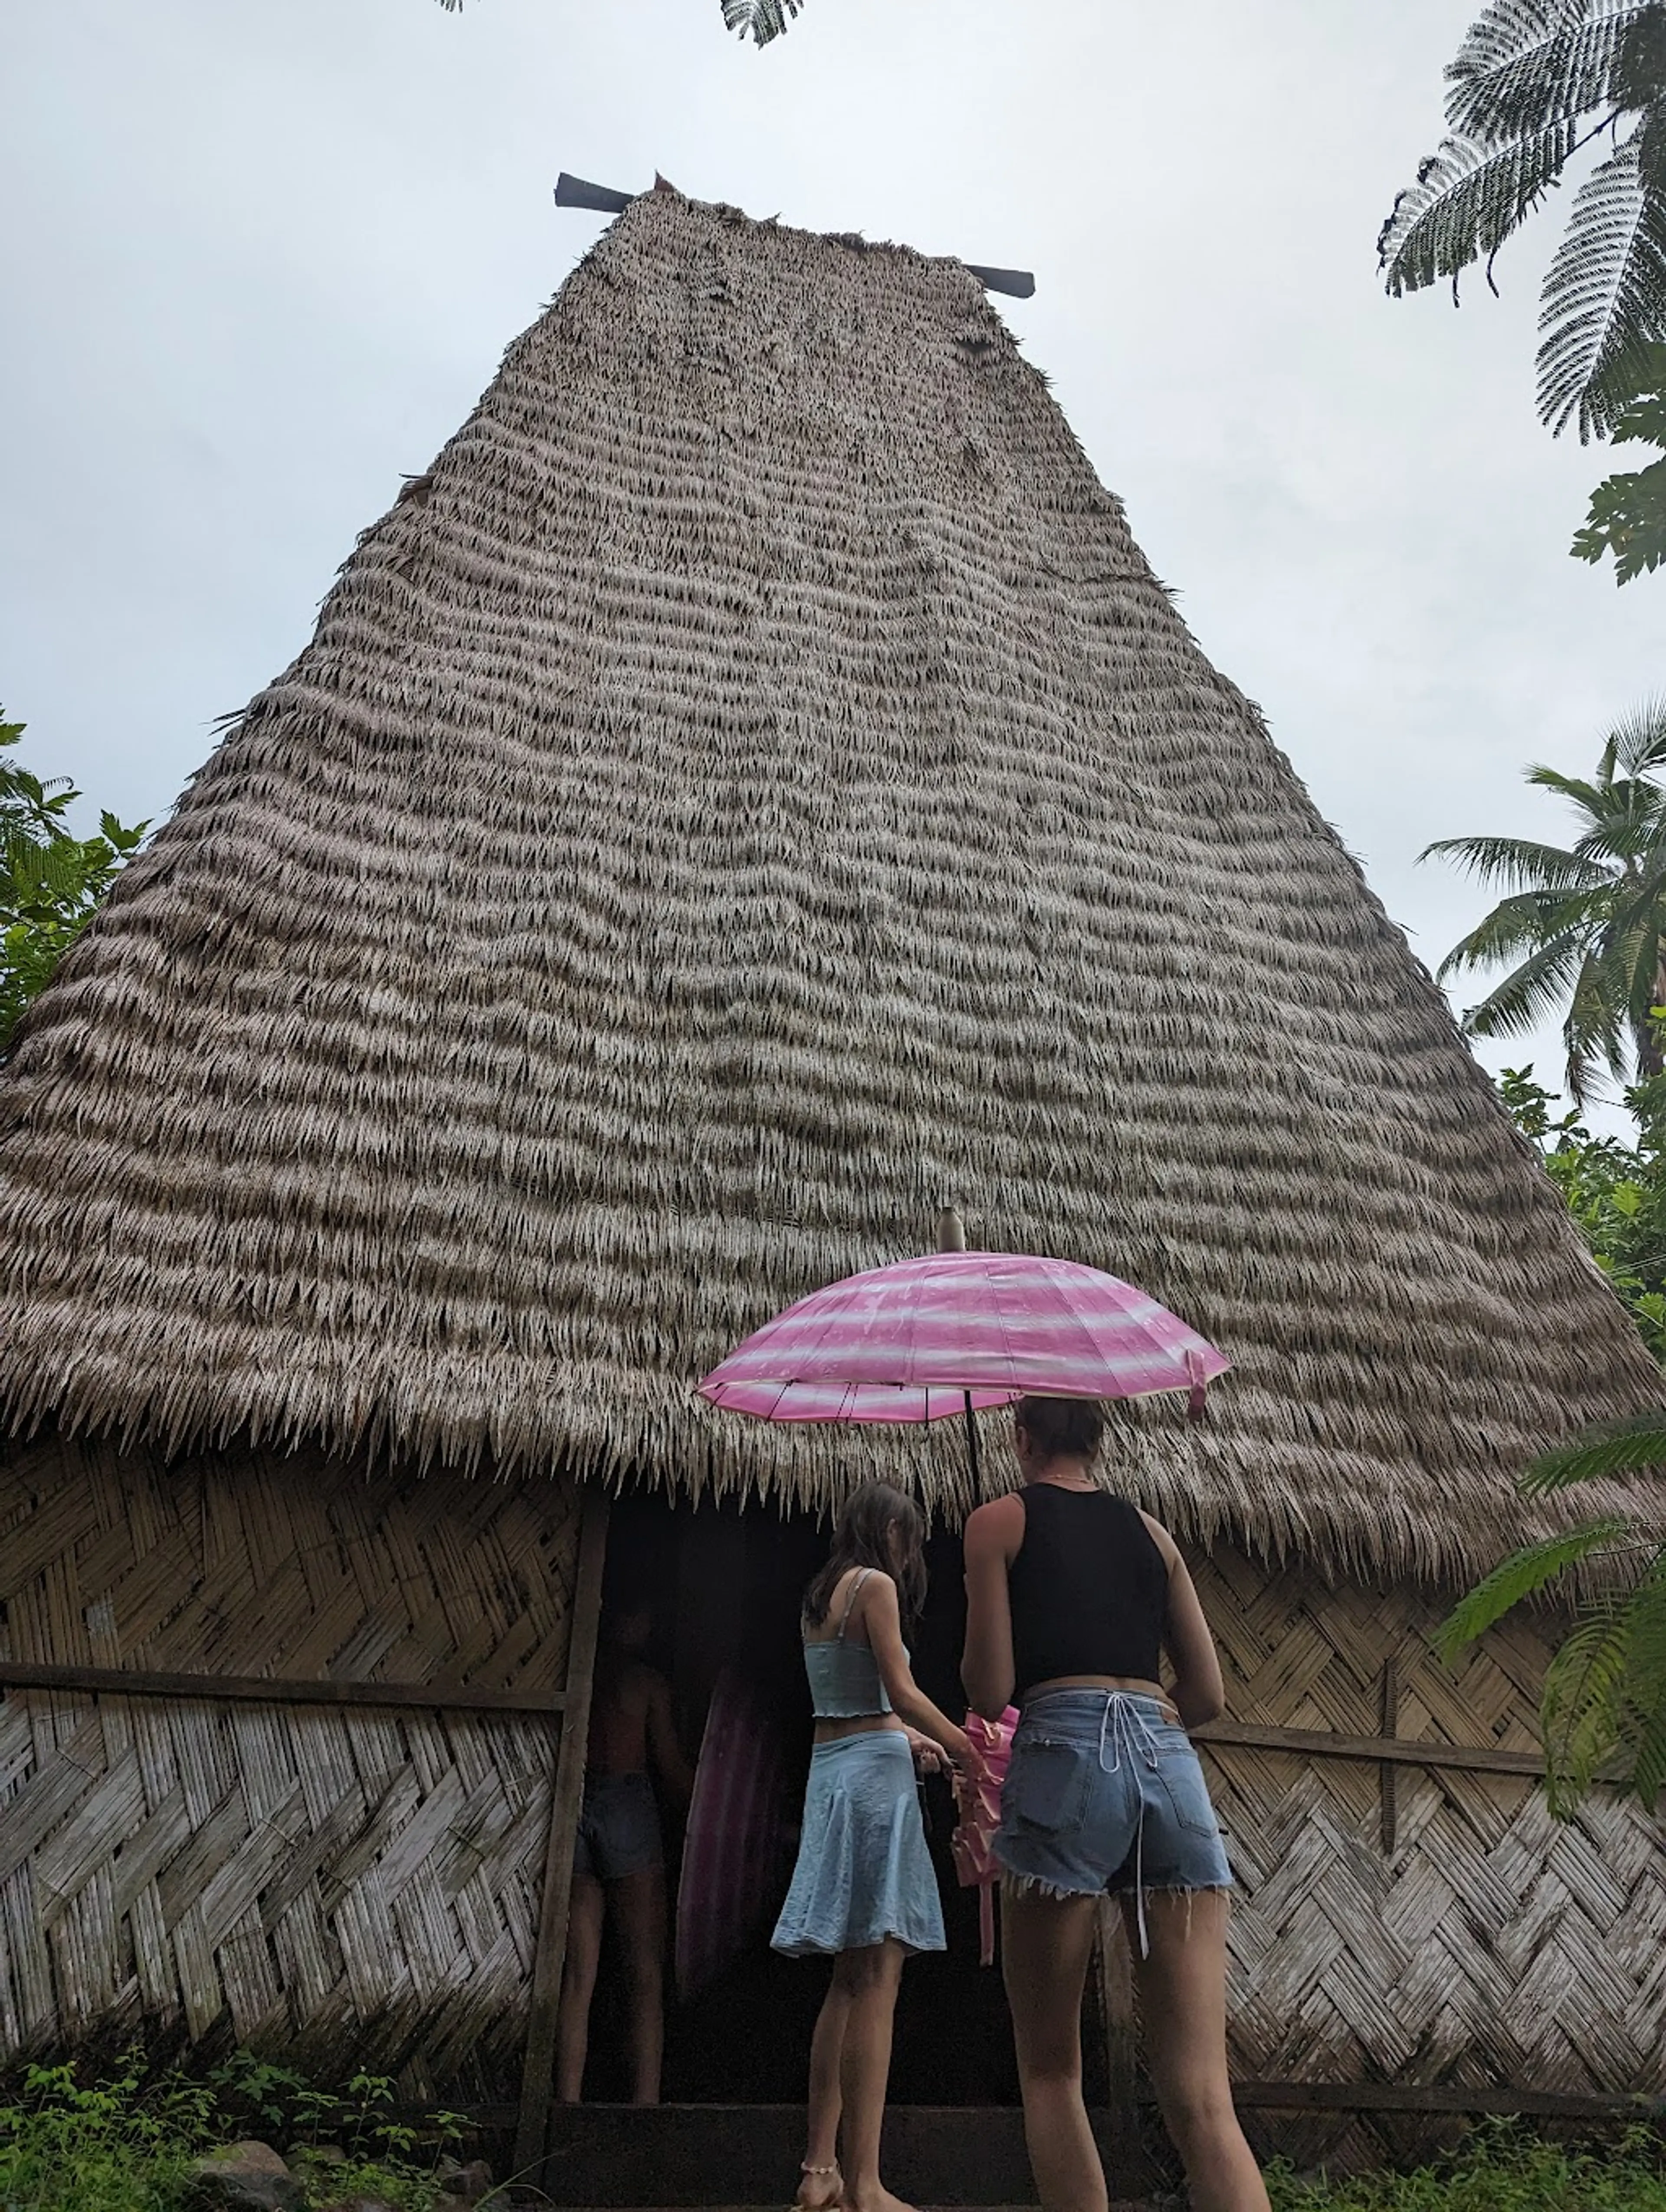 Fijian Village